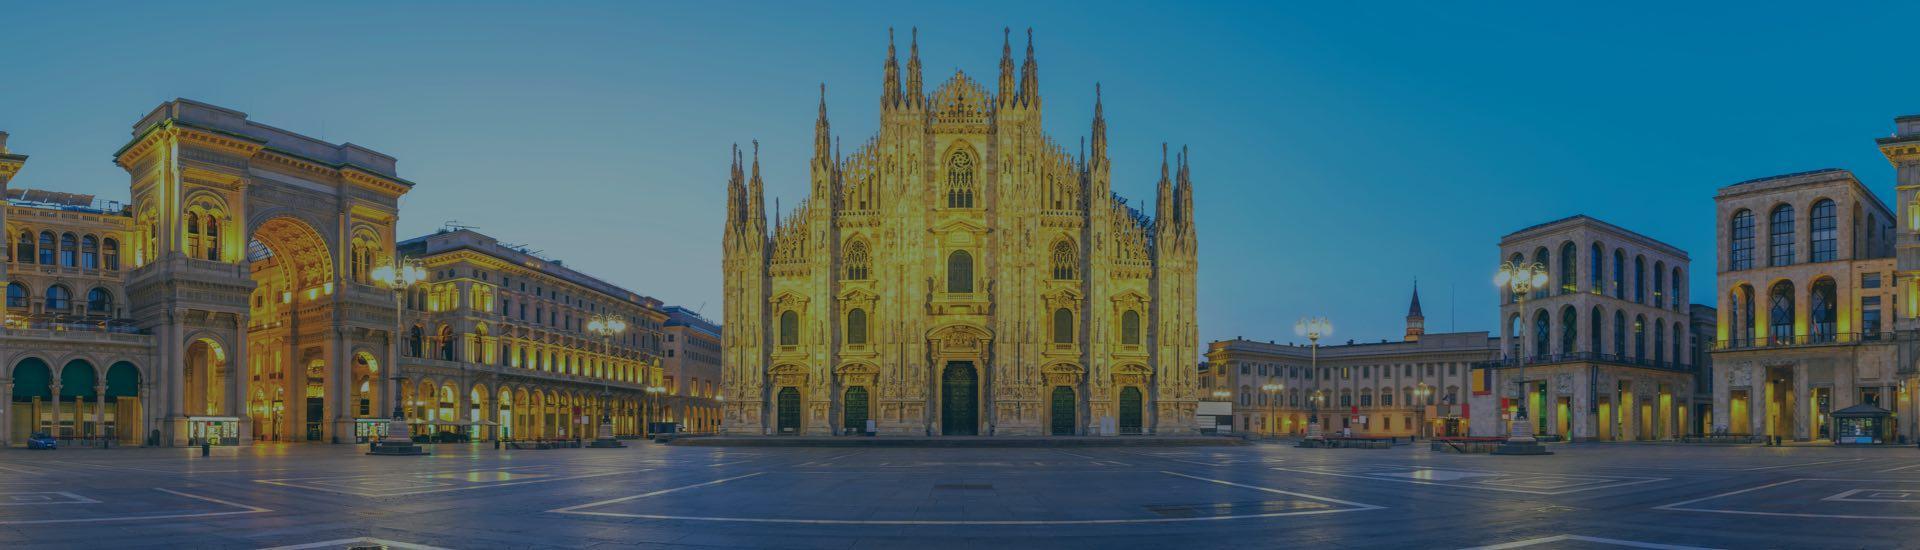 ابحث عن أفضل الفنادق في ميلانو